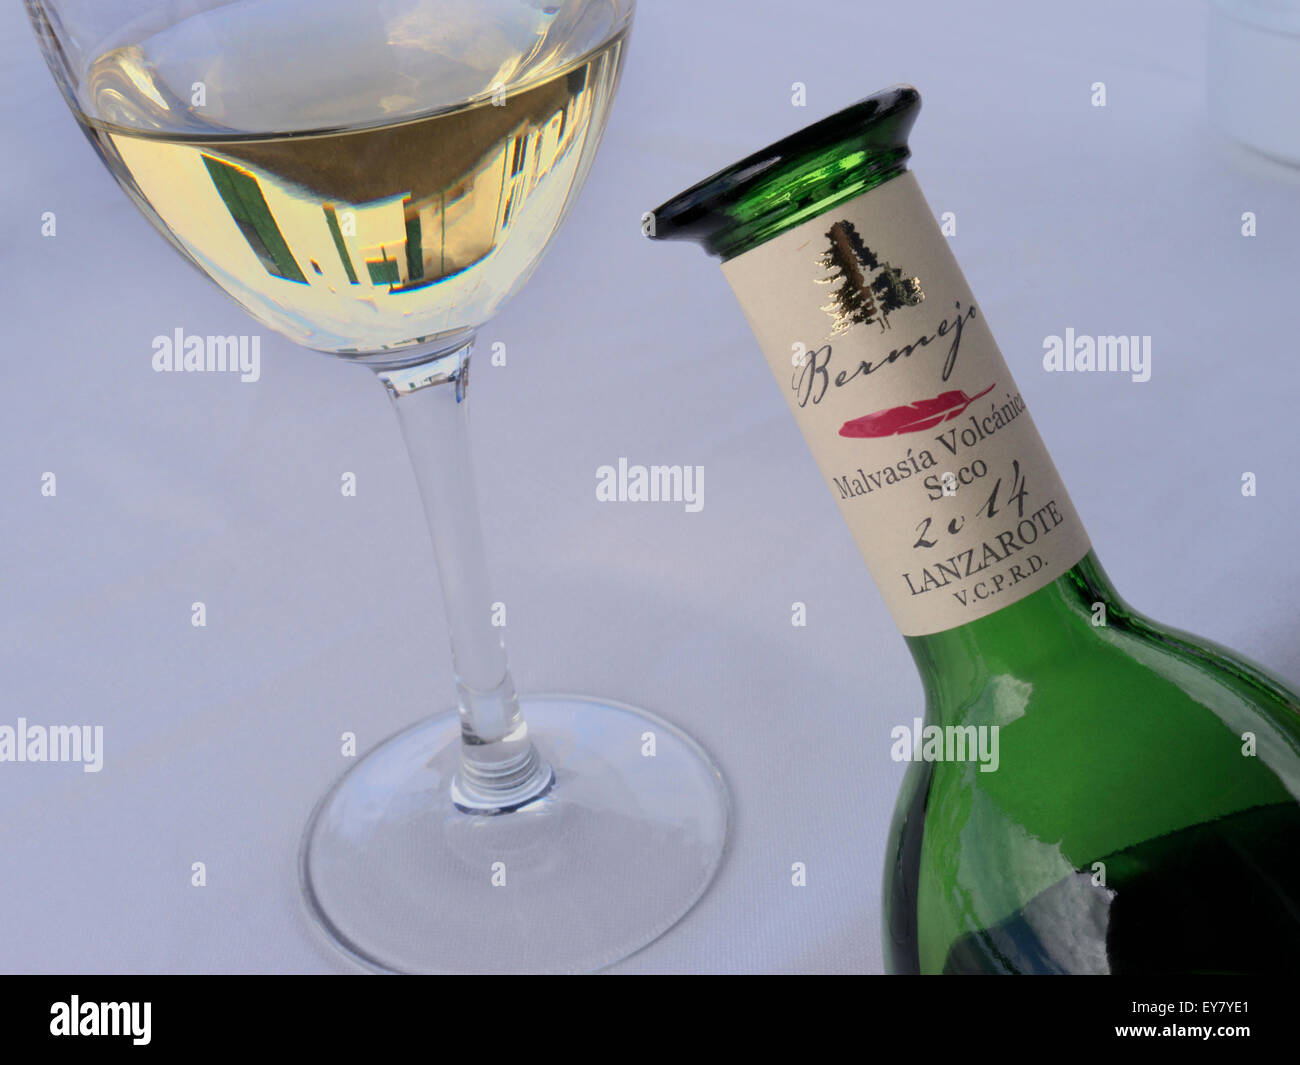 Lanzarote Bermejo malvasia trockener Weißwein Flasche und Glas in Restaurant Lage Stockfoto